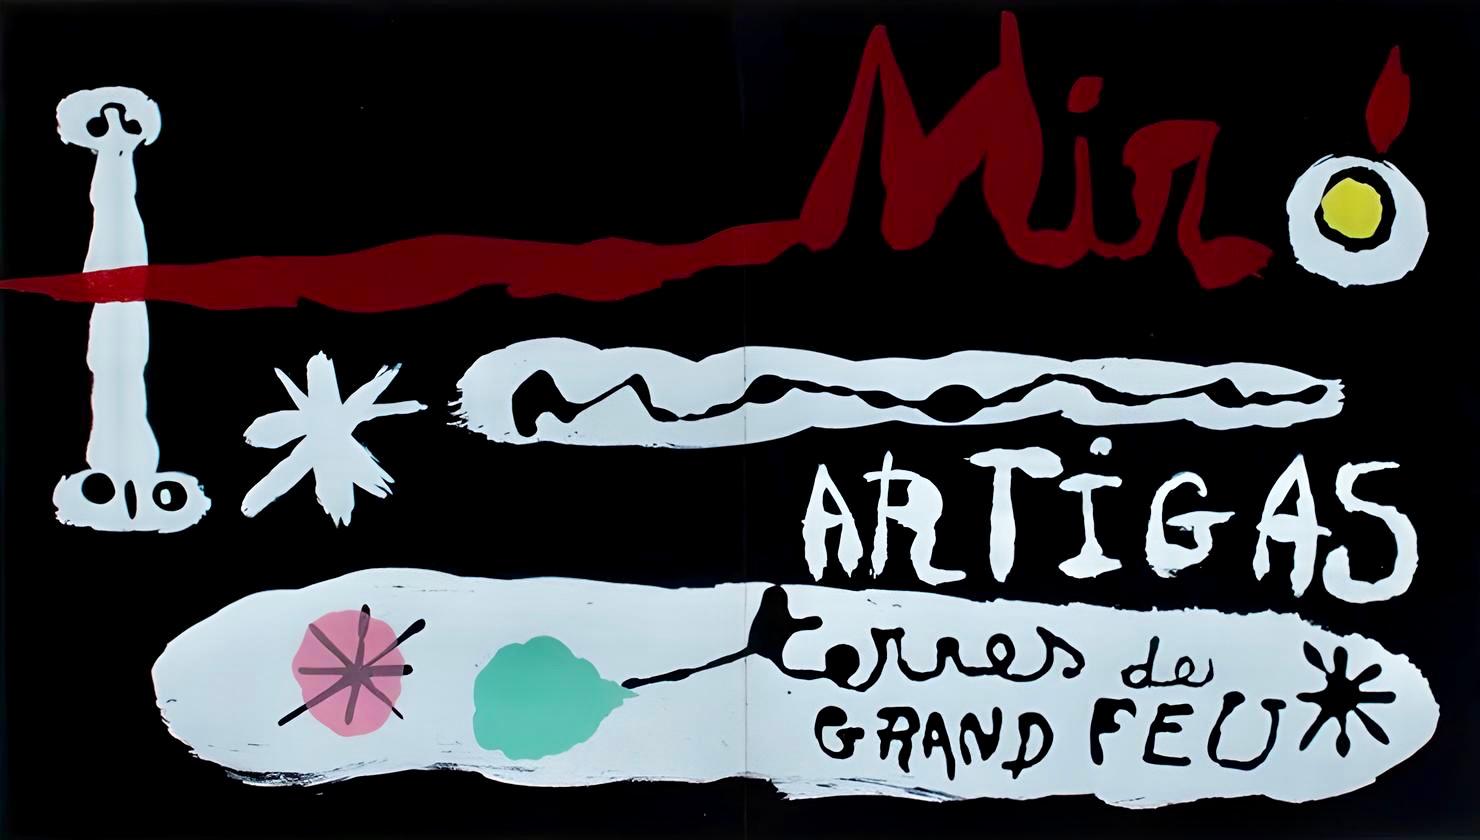 Joan Miró Abstract Print - Miro, Terres de grand feu (Mourlot 239) (after)